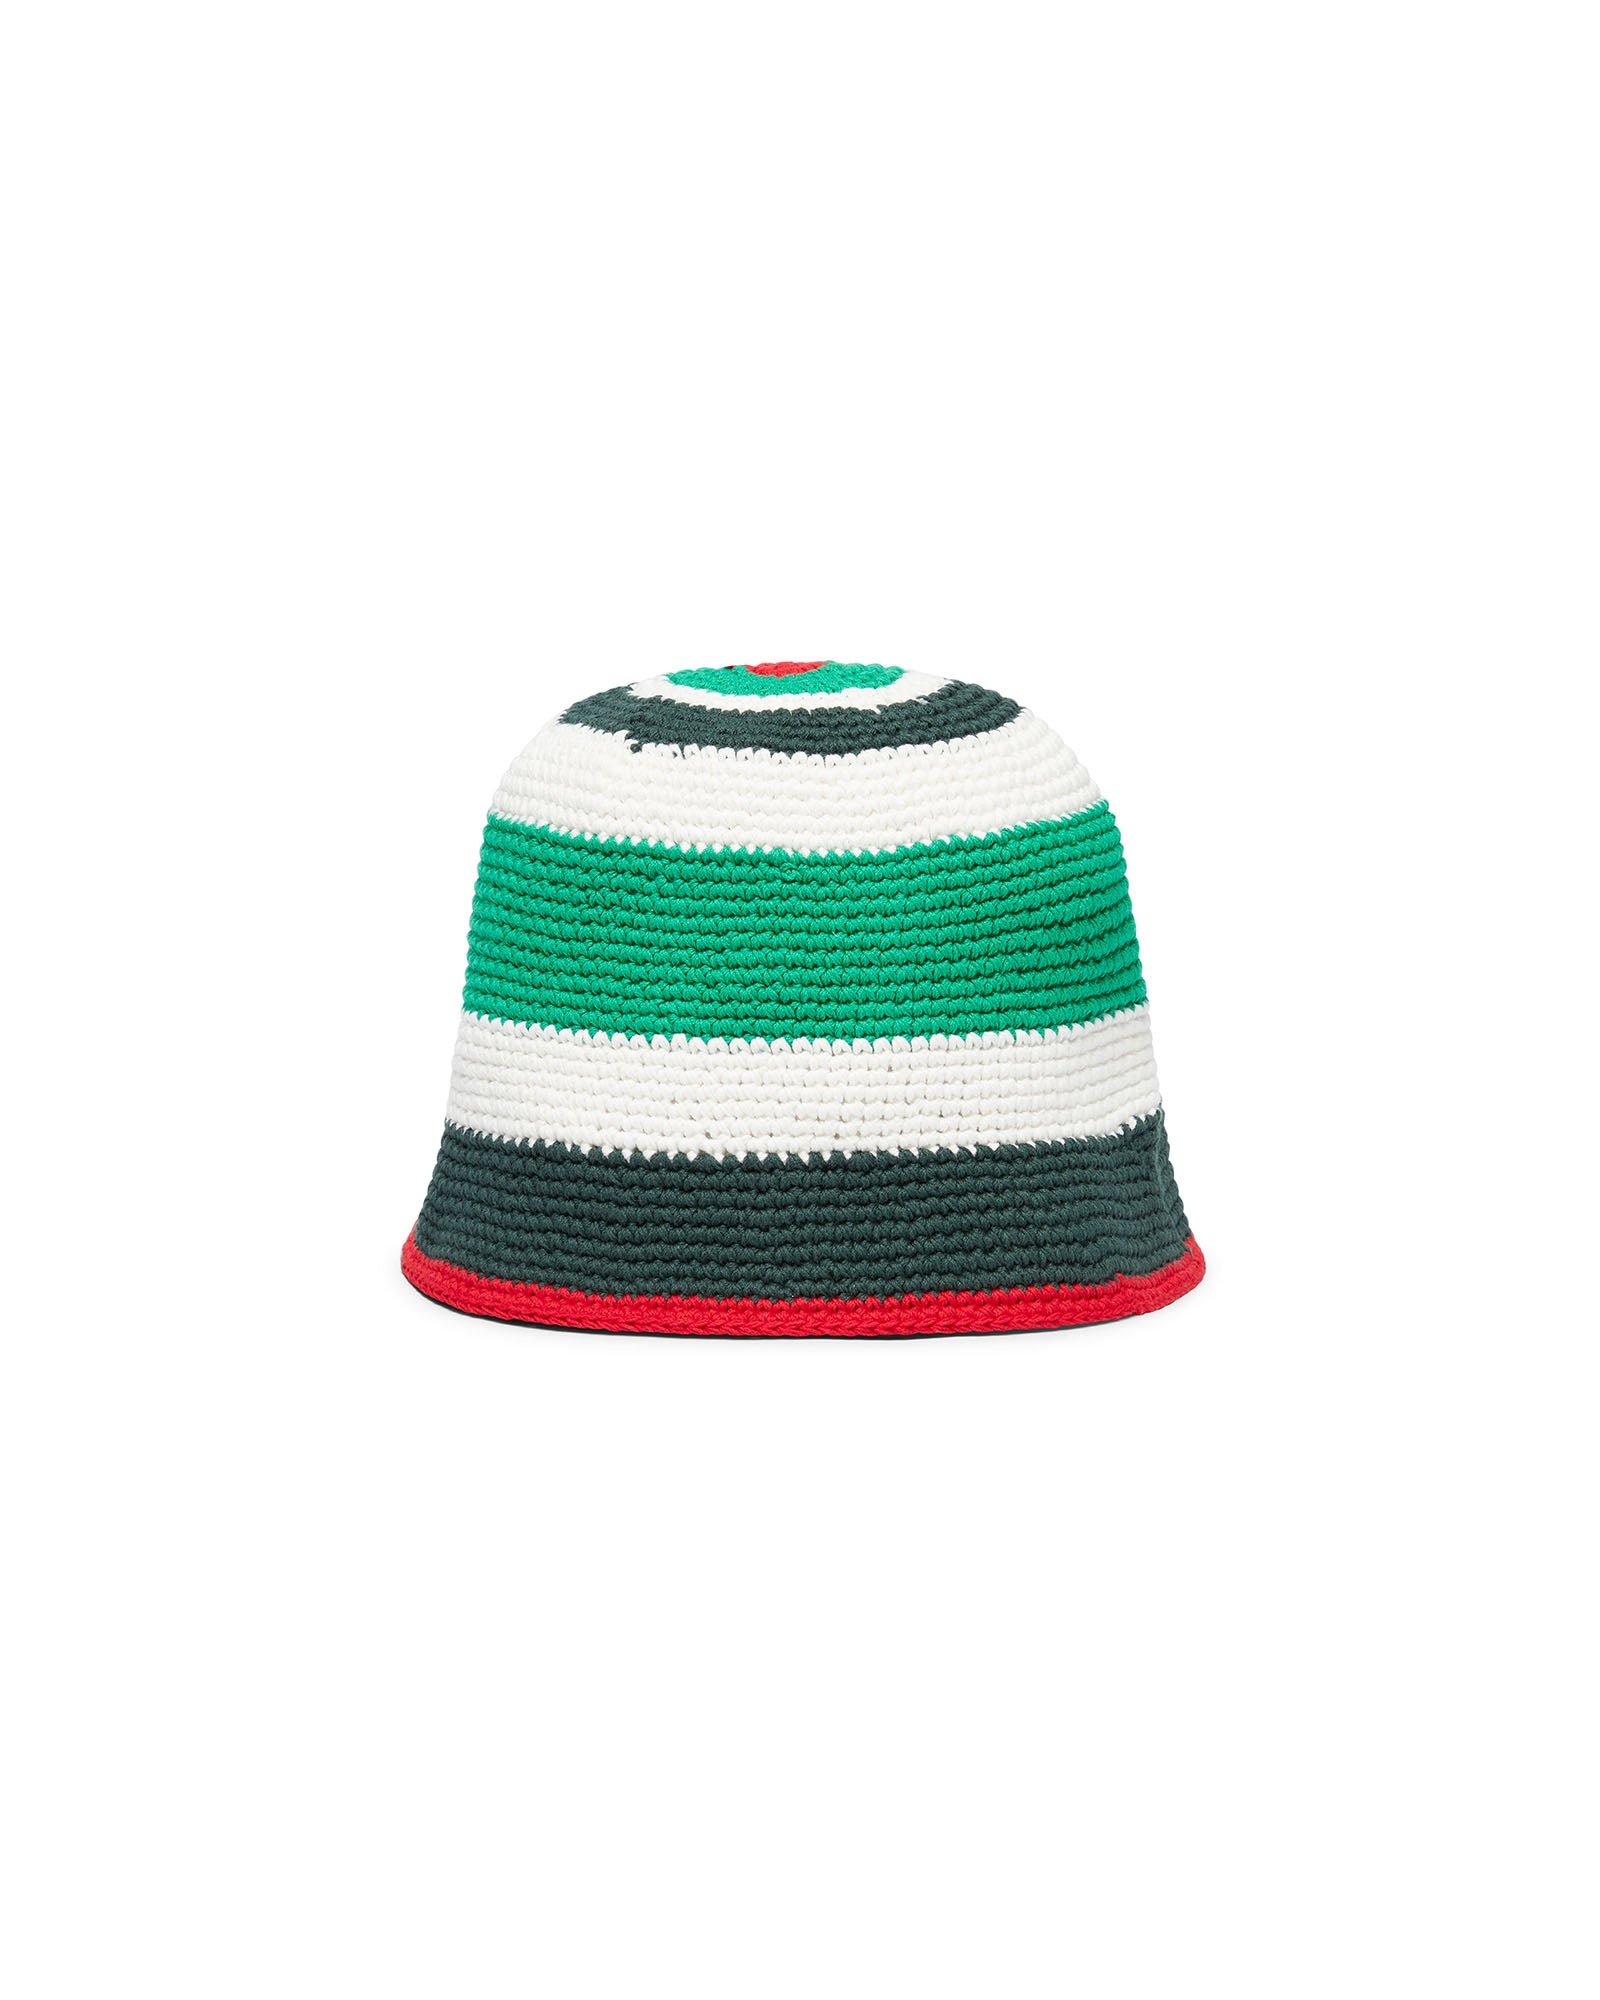 Crochet Hat - 2